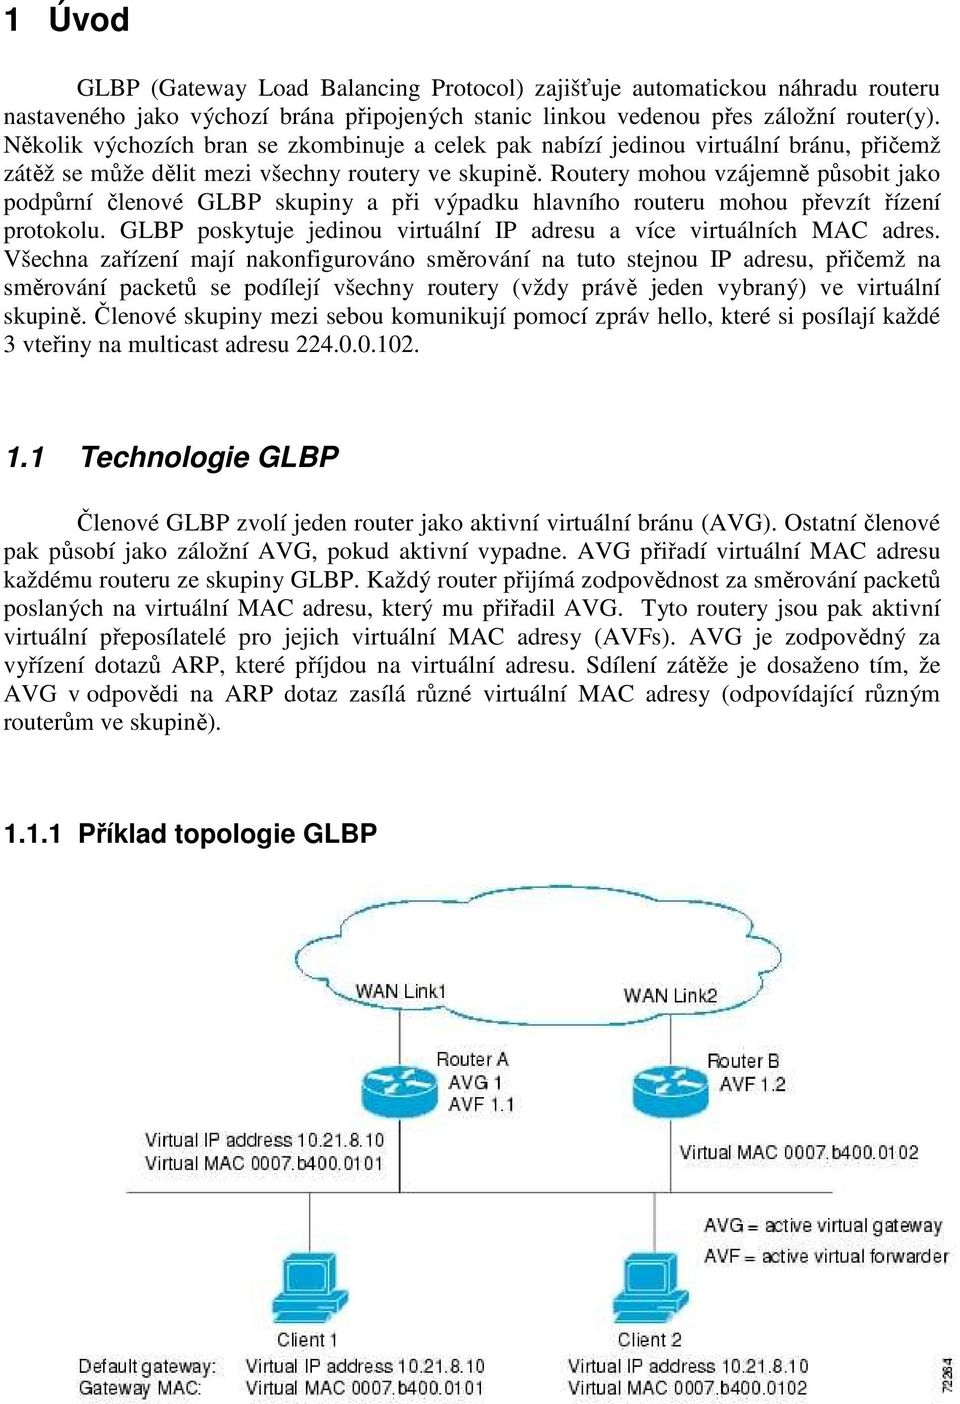 Routery mohou vzájemně působit jako podpůrní členové GLBP skupiny a při výpadku hlavního routeru mohou převzít řízení protokolu.